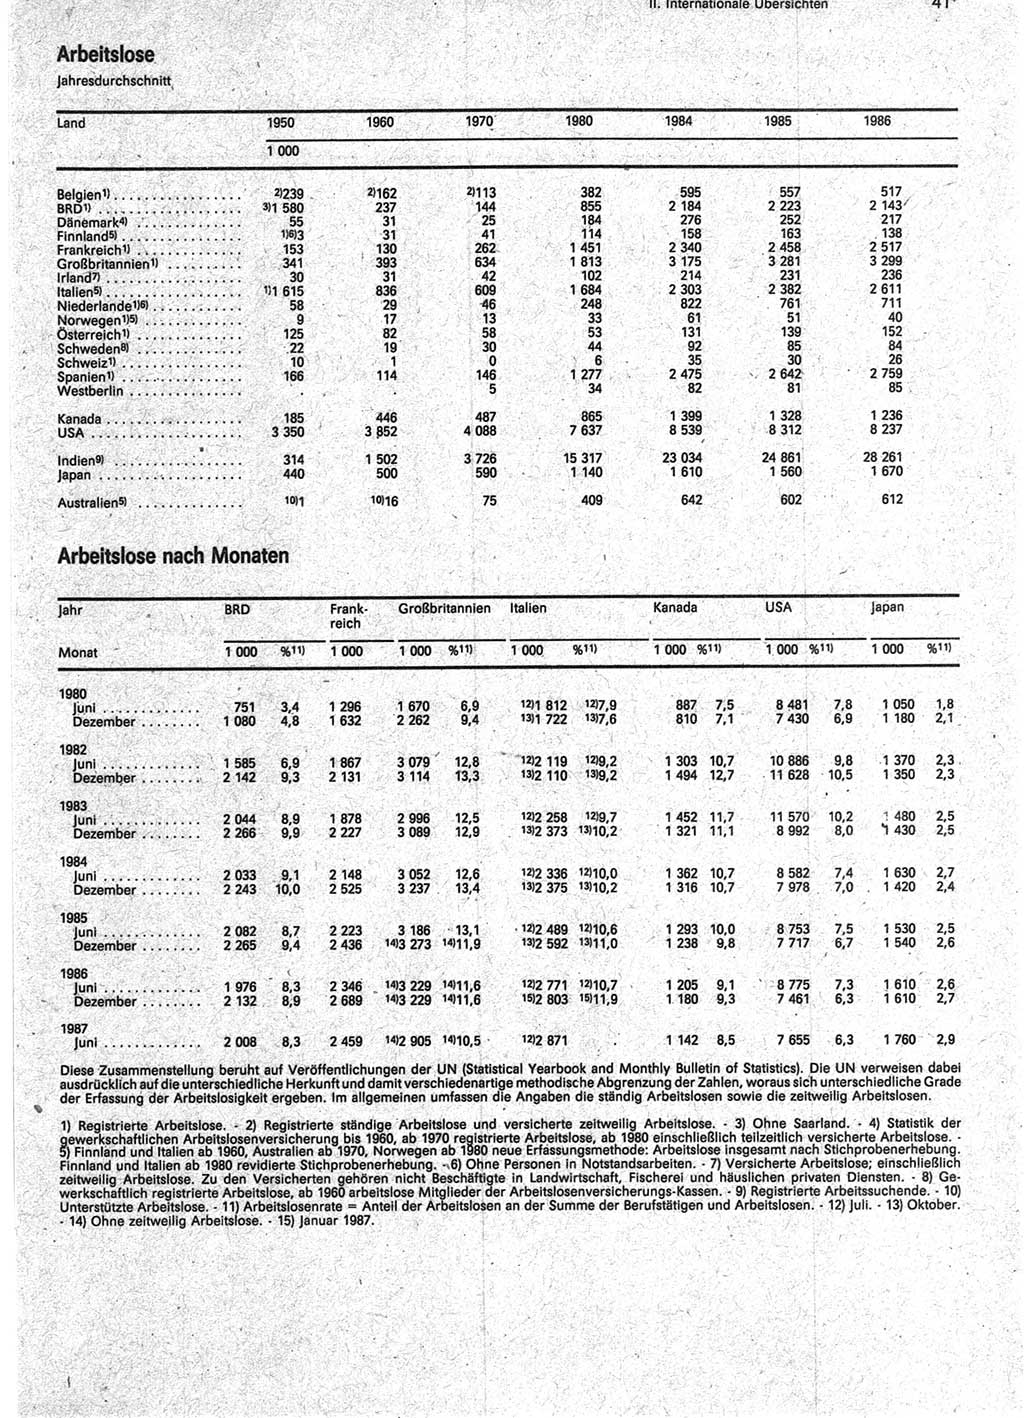 Statistisches Jahrbuch der Deutschen Demokratischen Republik (DDR) 1988, Seite 41 (Stat. Jb. DDR 1988, S. 41)